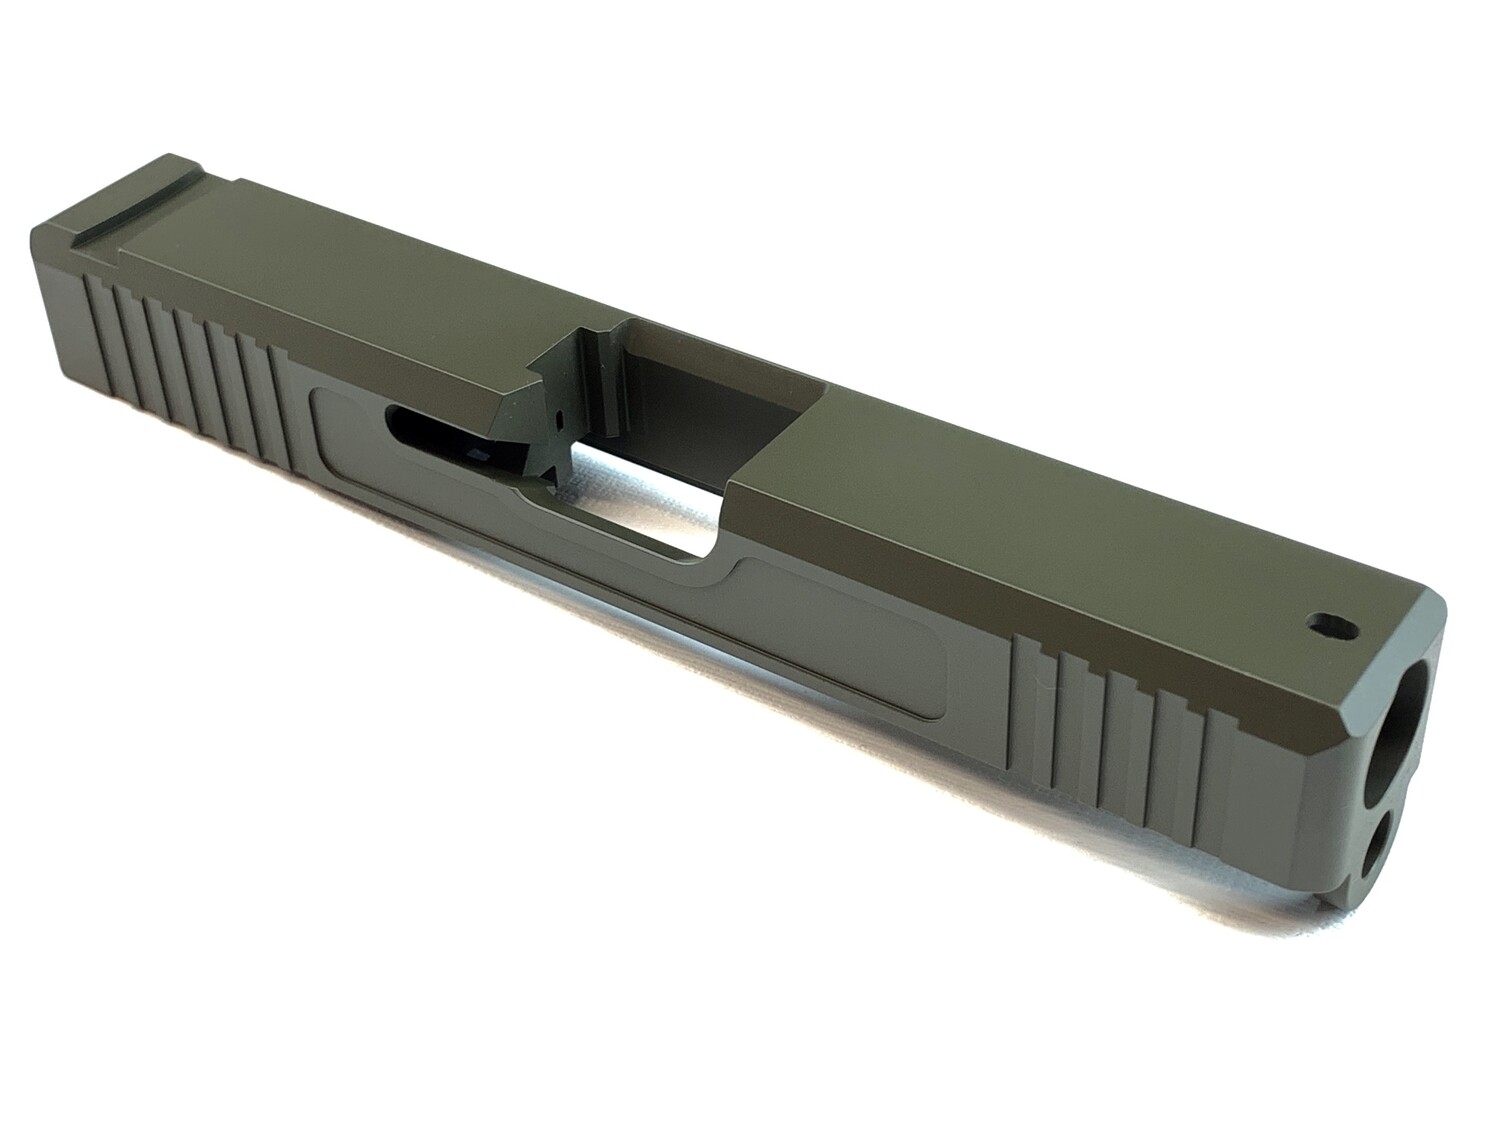 Glock 19 Slide w/ Front & Rear Serrations - Recessed Windows - OD Green